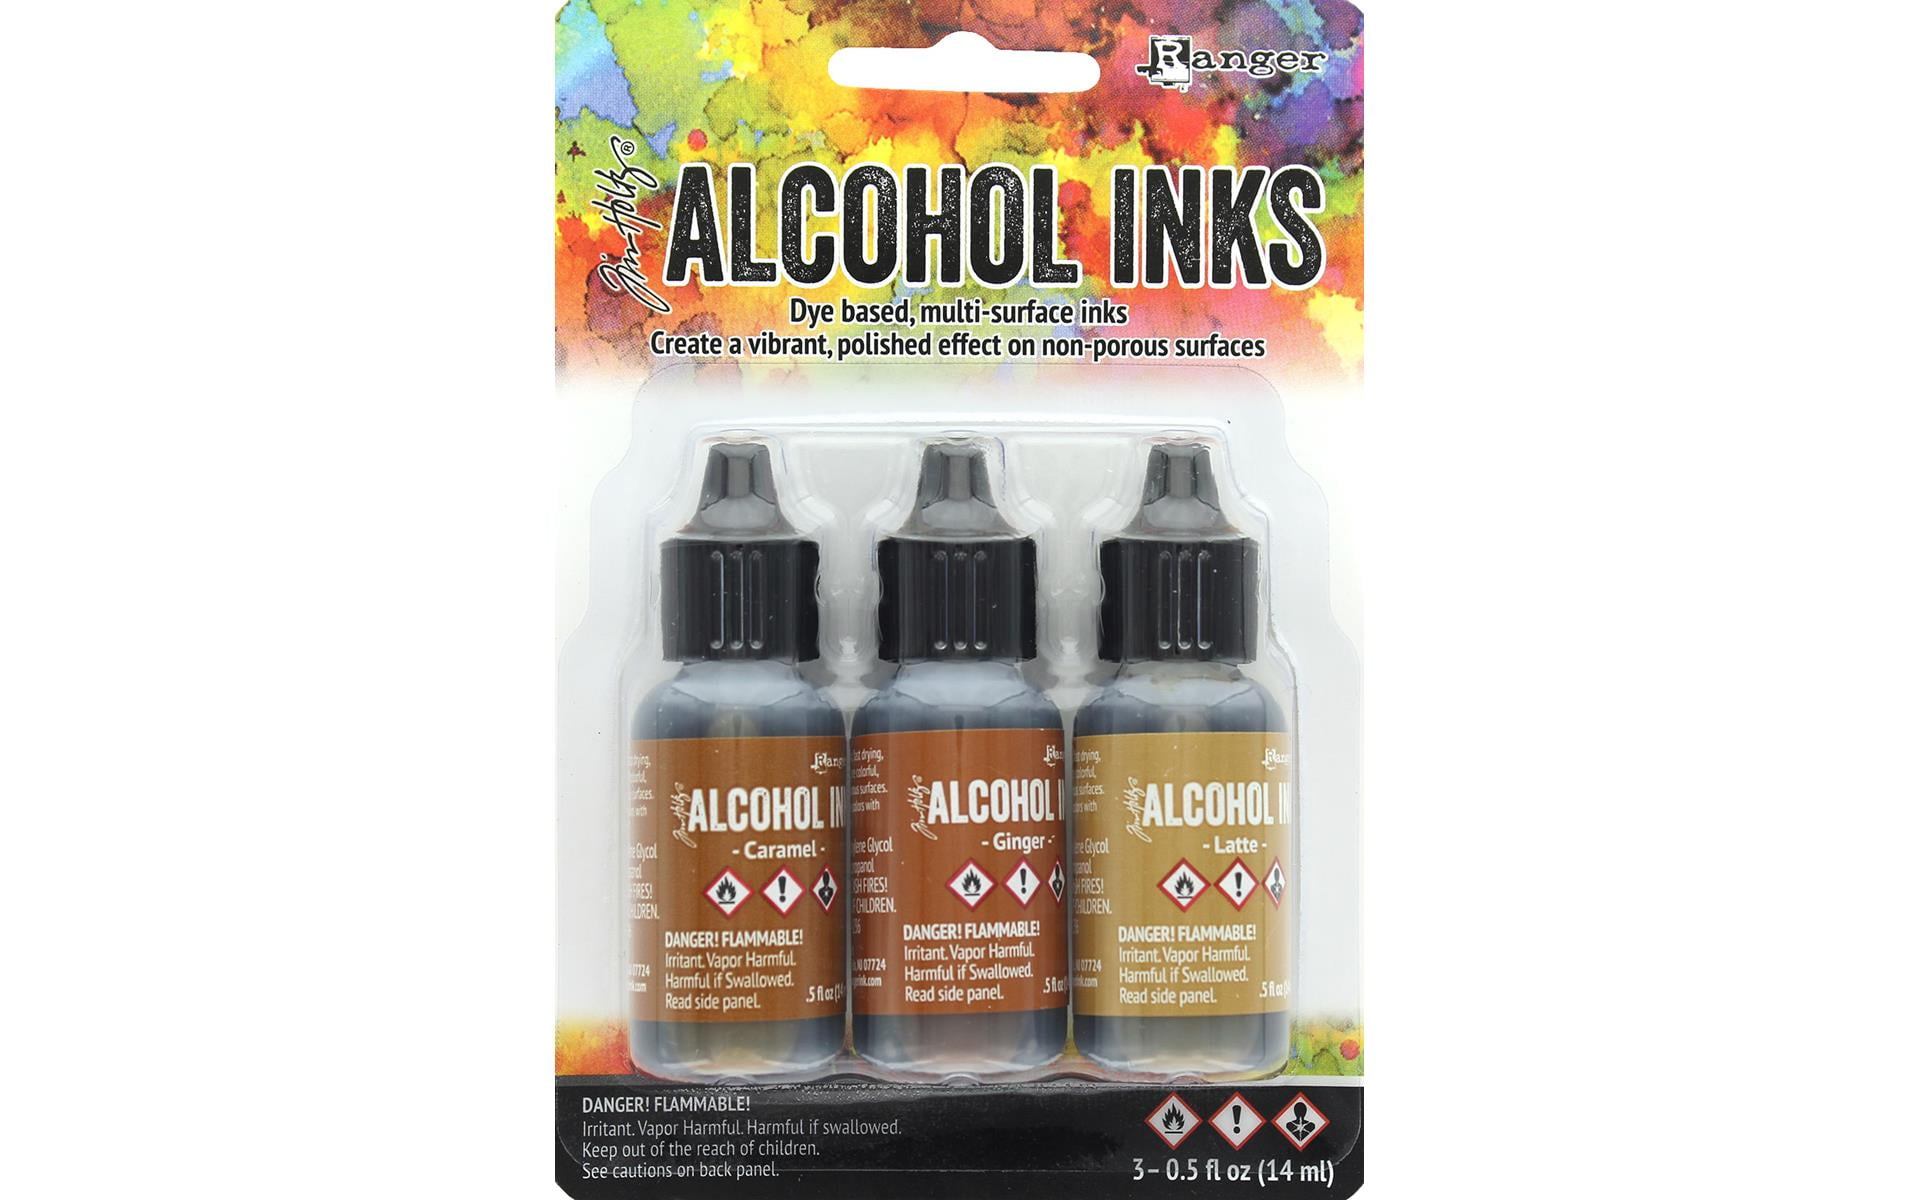 Tim Holtz Alcohol Ink Lift-Ink Reinker .5oz